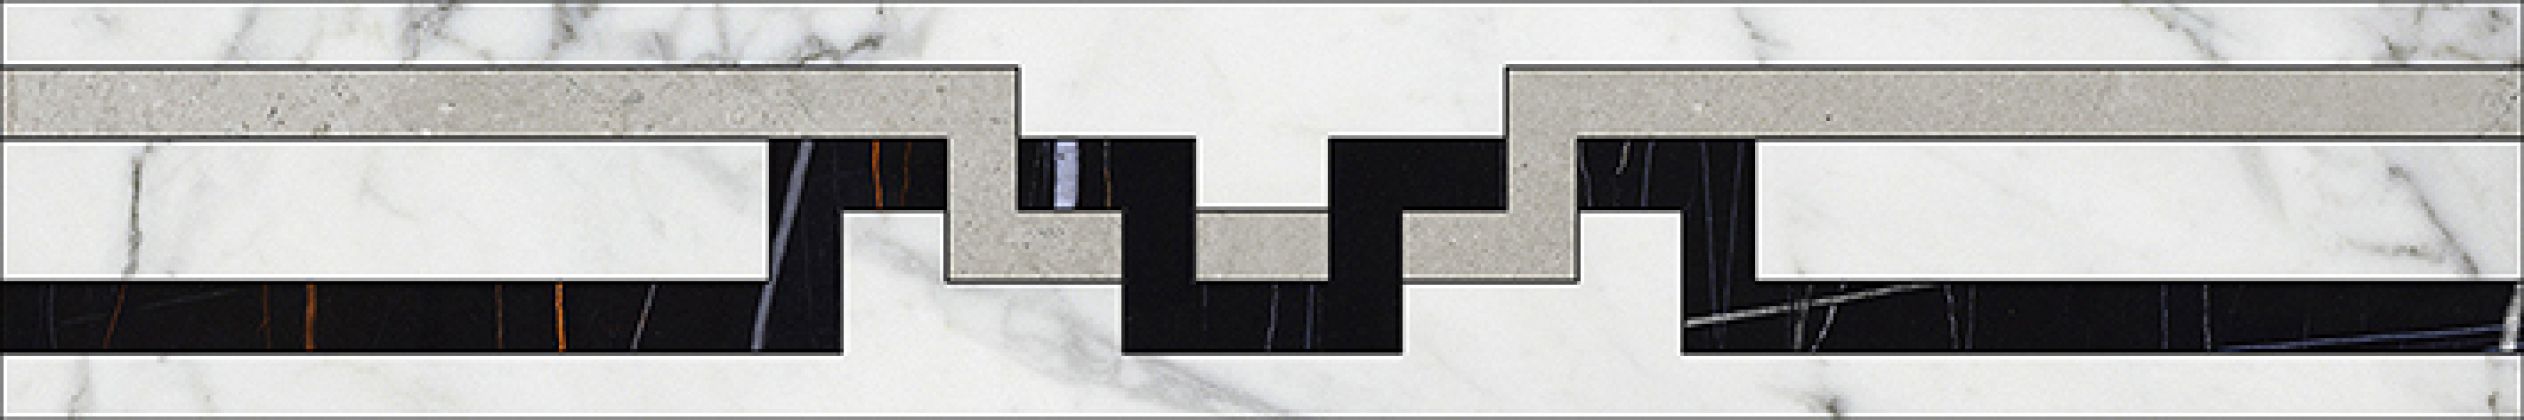 Marble Trend Фриз гидрорезка K-1000/MR/f01-cut/ Carrara 10x60 K-1000/MR/f01-cut/100x600x10